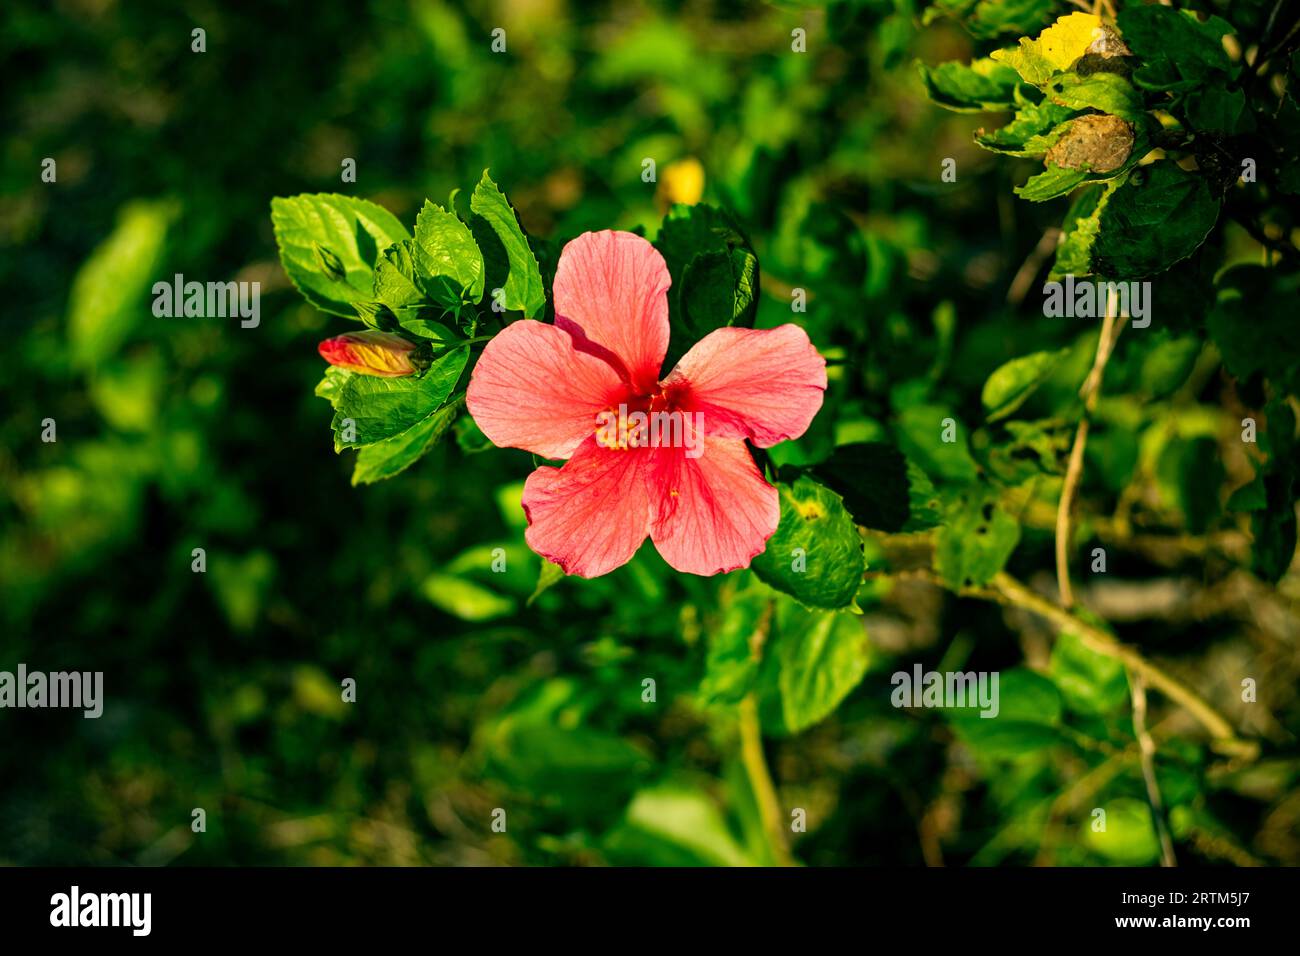 C'est la fleur nationale de l'hibiscus rosa-sinensis de Malaisie, connu sous le nom d'hibiscus chinois, rose de Chine, hibiscus hawaïen et mauve rose. Cette fleur Banque D'Images